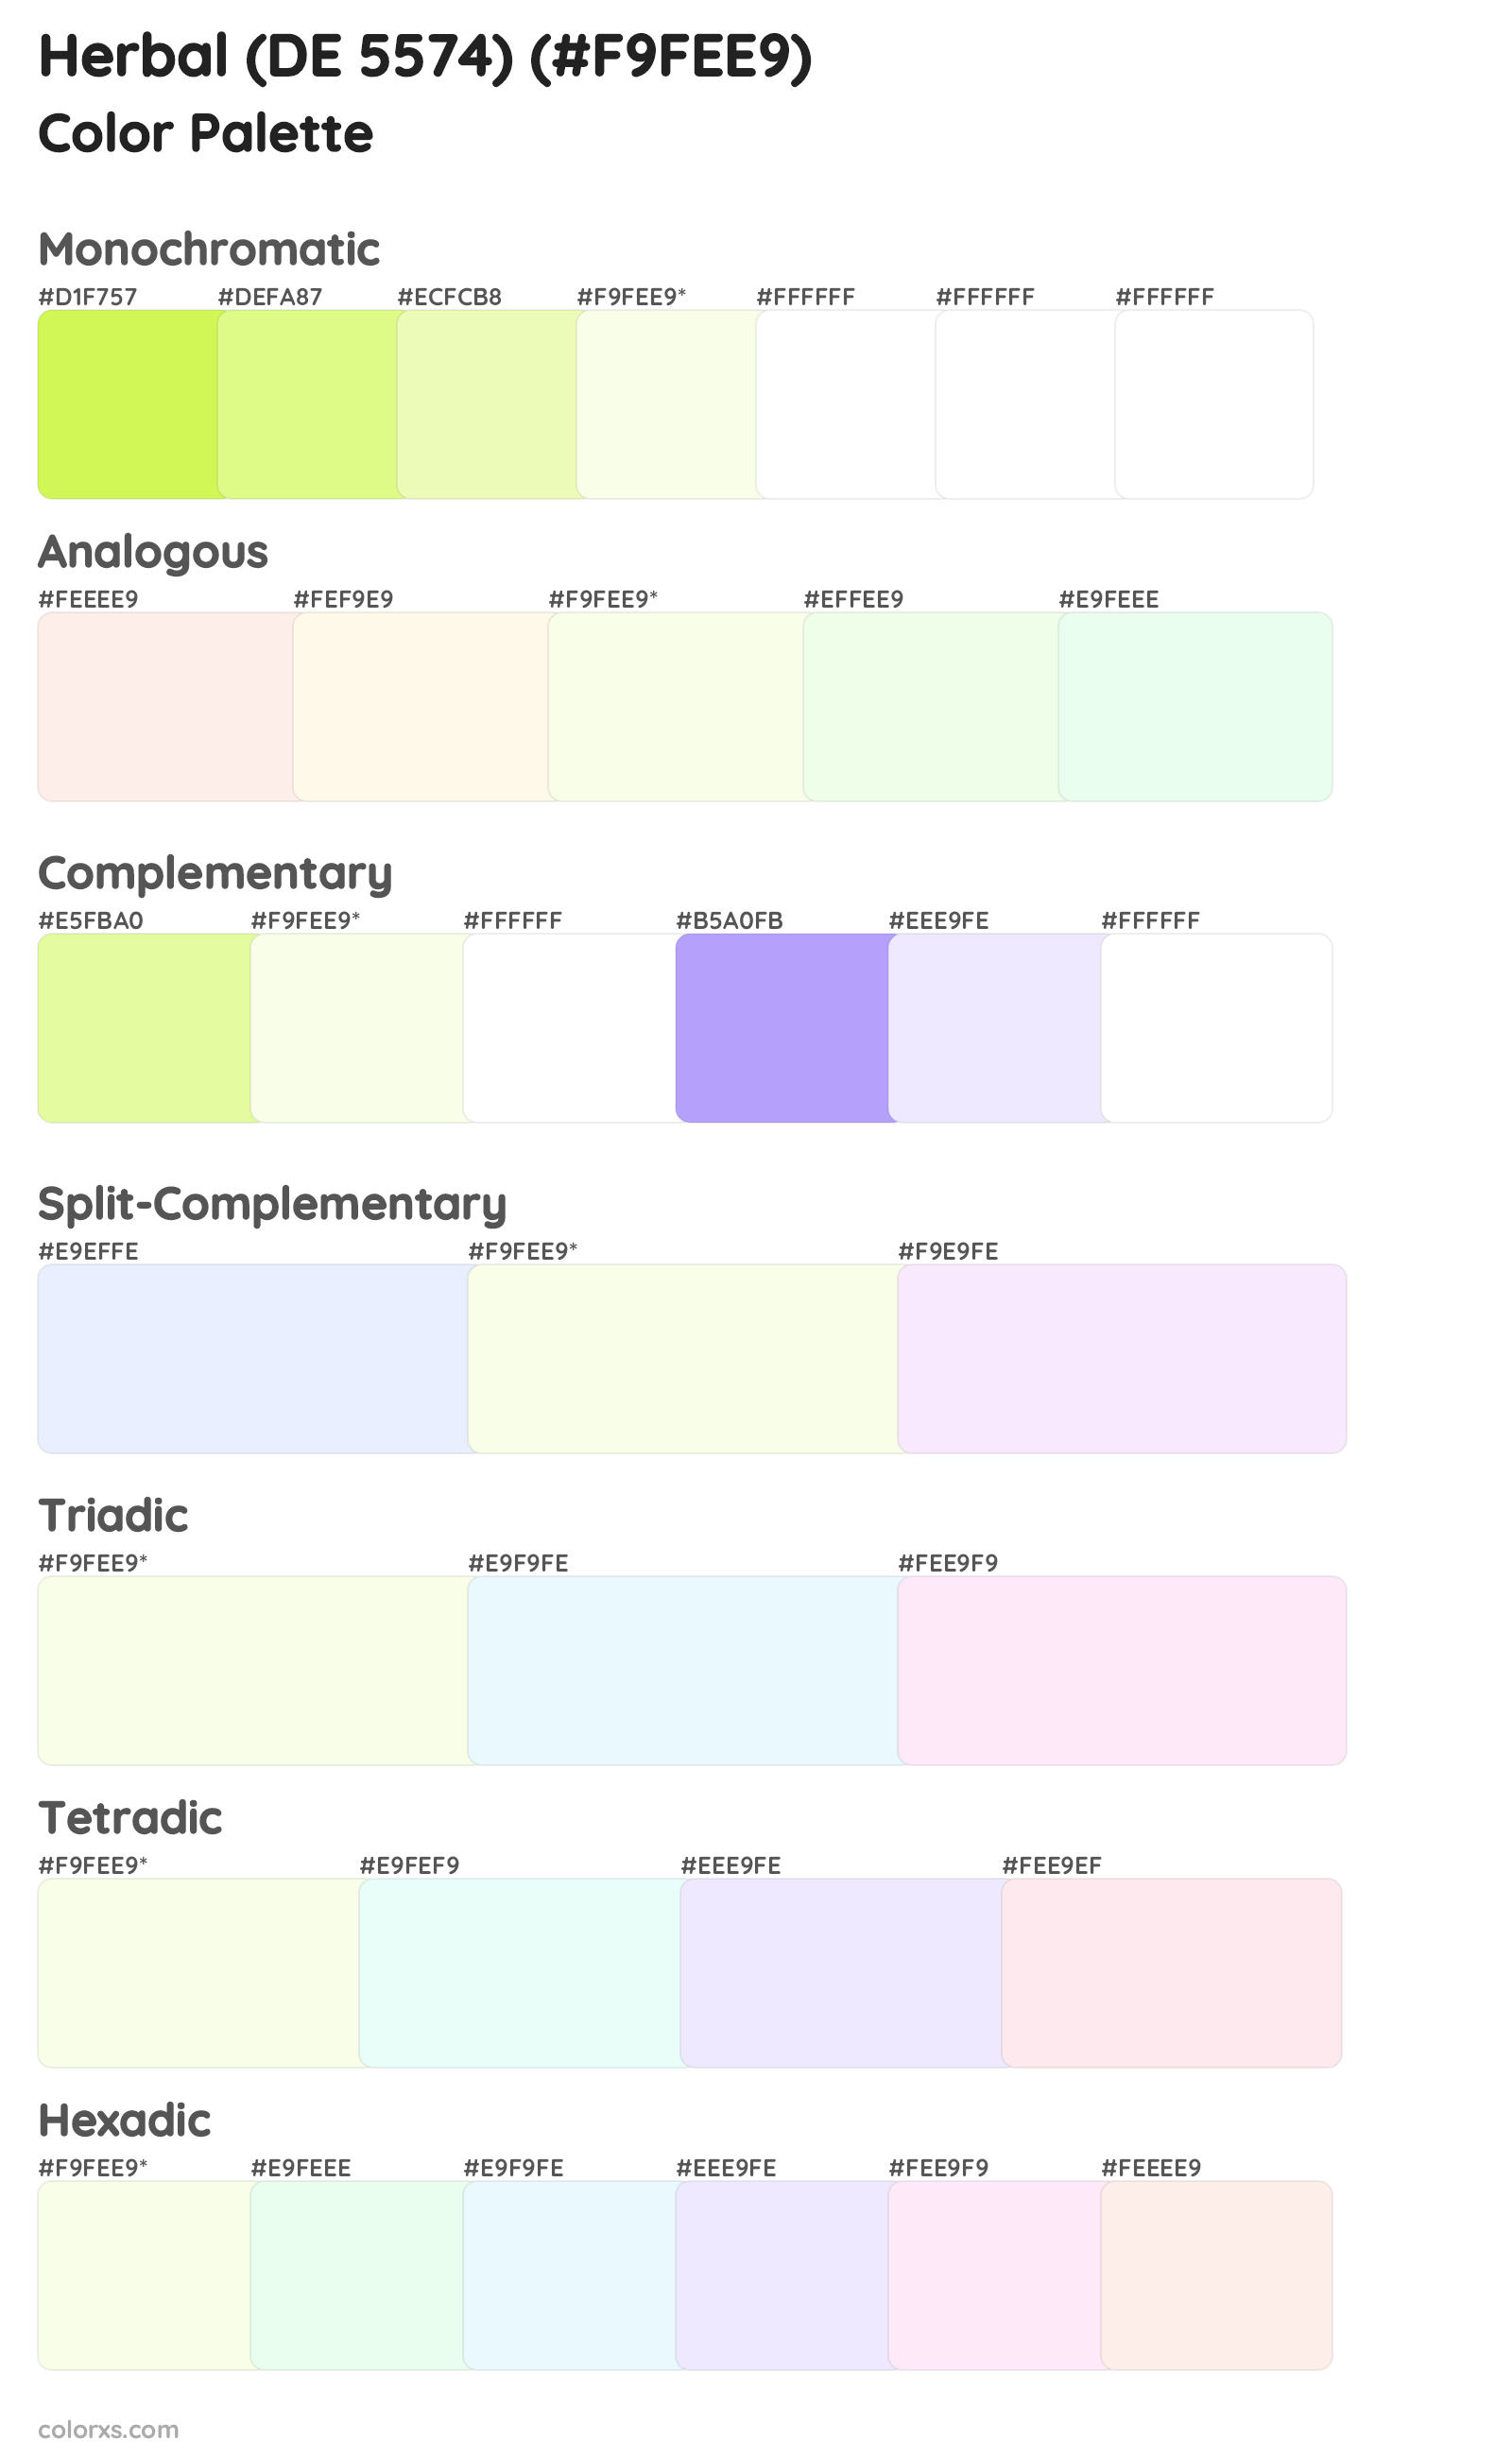 Herbal (DE 5574) Color Scheme Palettes